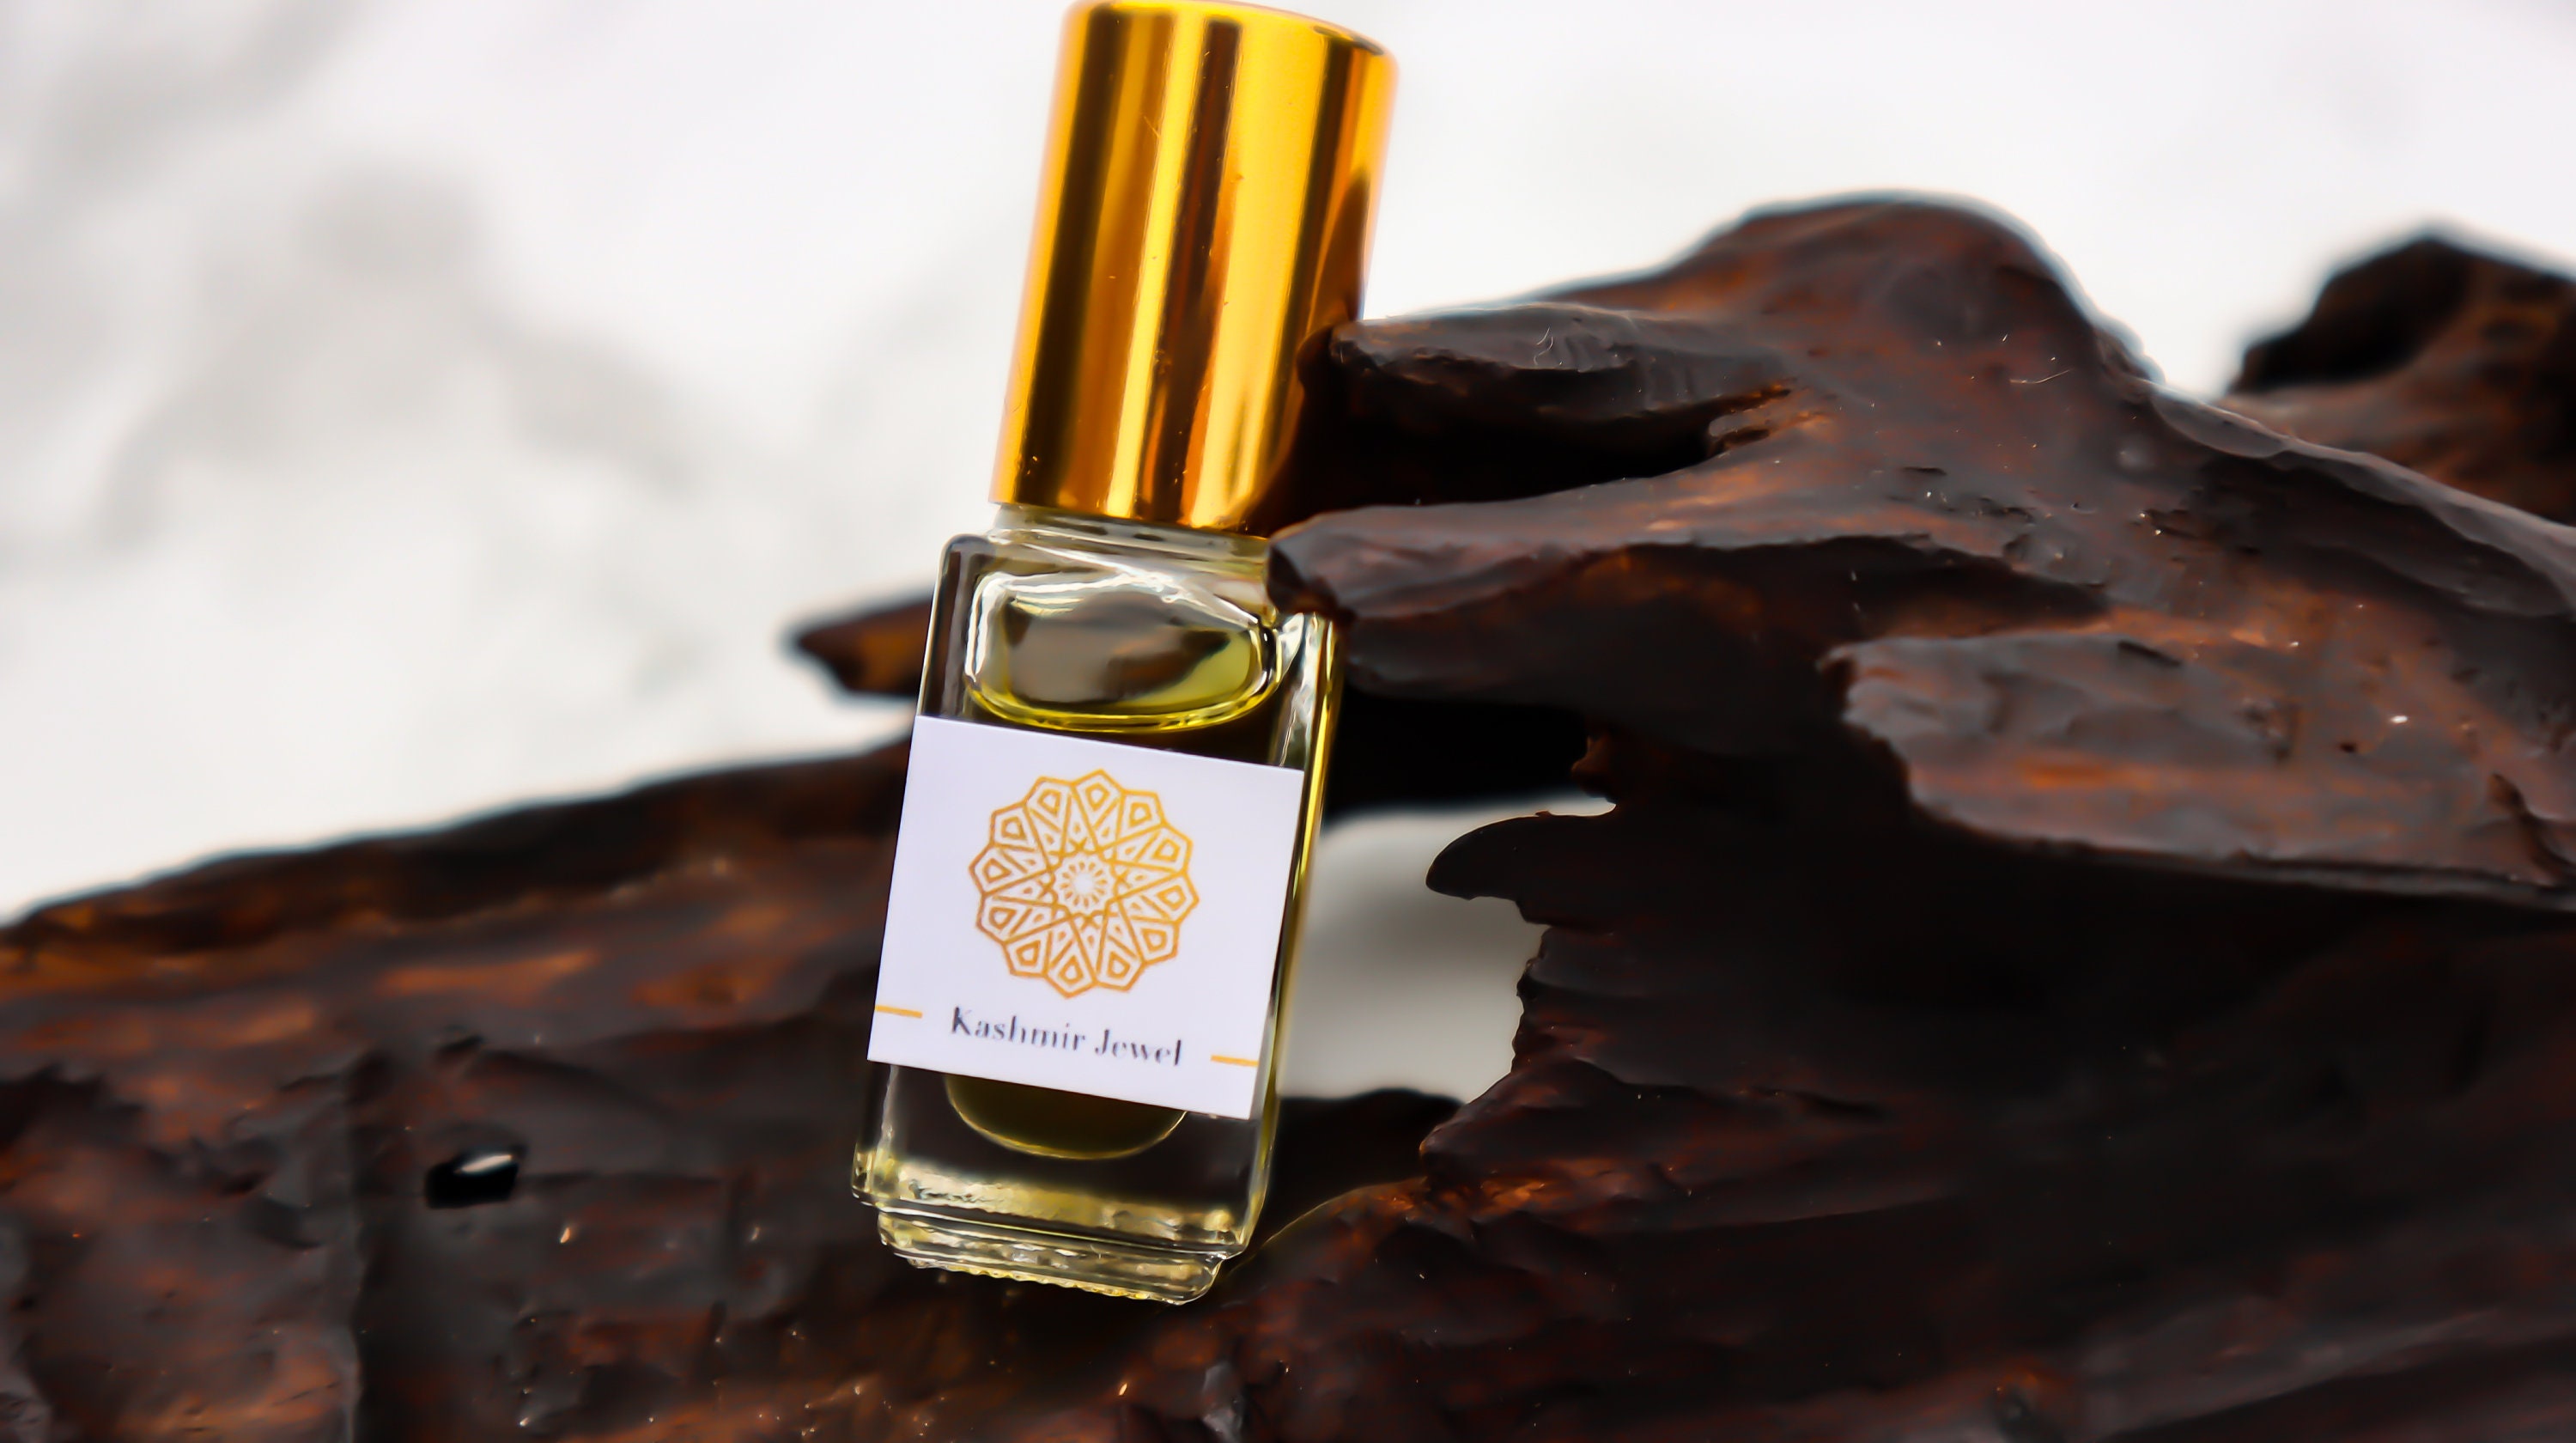 Kashmir Oud Artisanal Aroma Body Oil